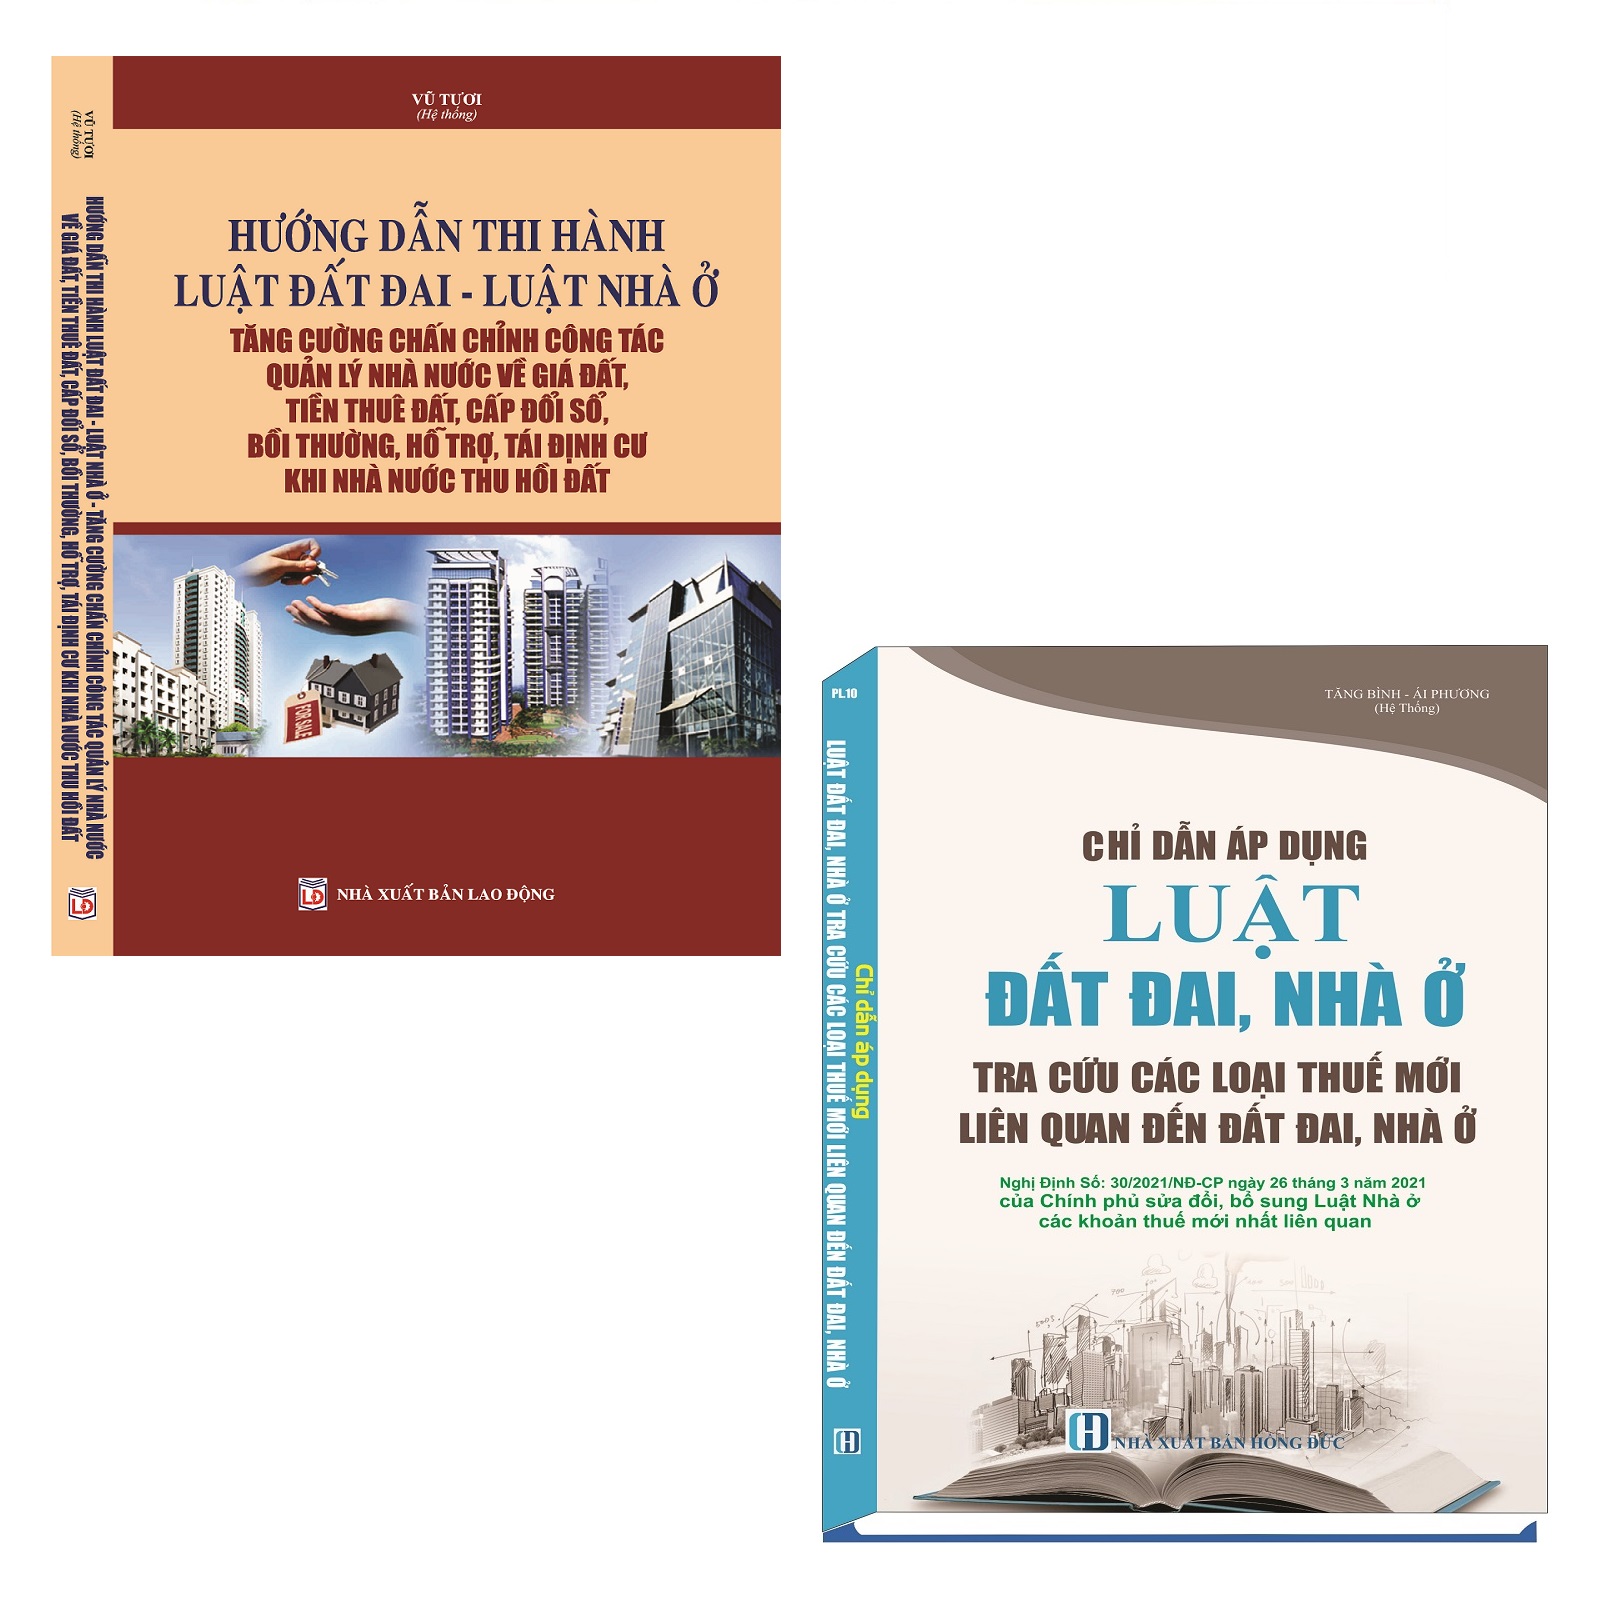 Combo 2 Cuốn Sách Hướng Dẫn Thi Hành Luật Đất Đai, Luật Nhà Ở + Chỉ Dẫn Áp Dụng Luật Đất Đai, Nhà Ở Tra Cứu Các Loại Thuế Mới Liên Quan Đến Đất Đai, Nhà Ở